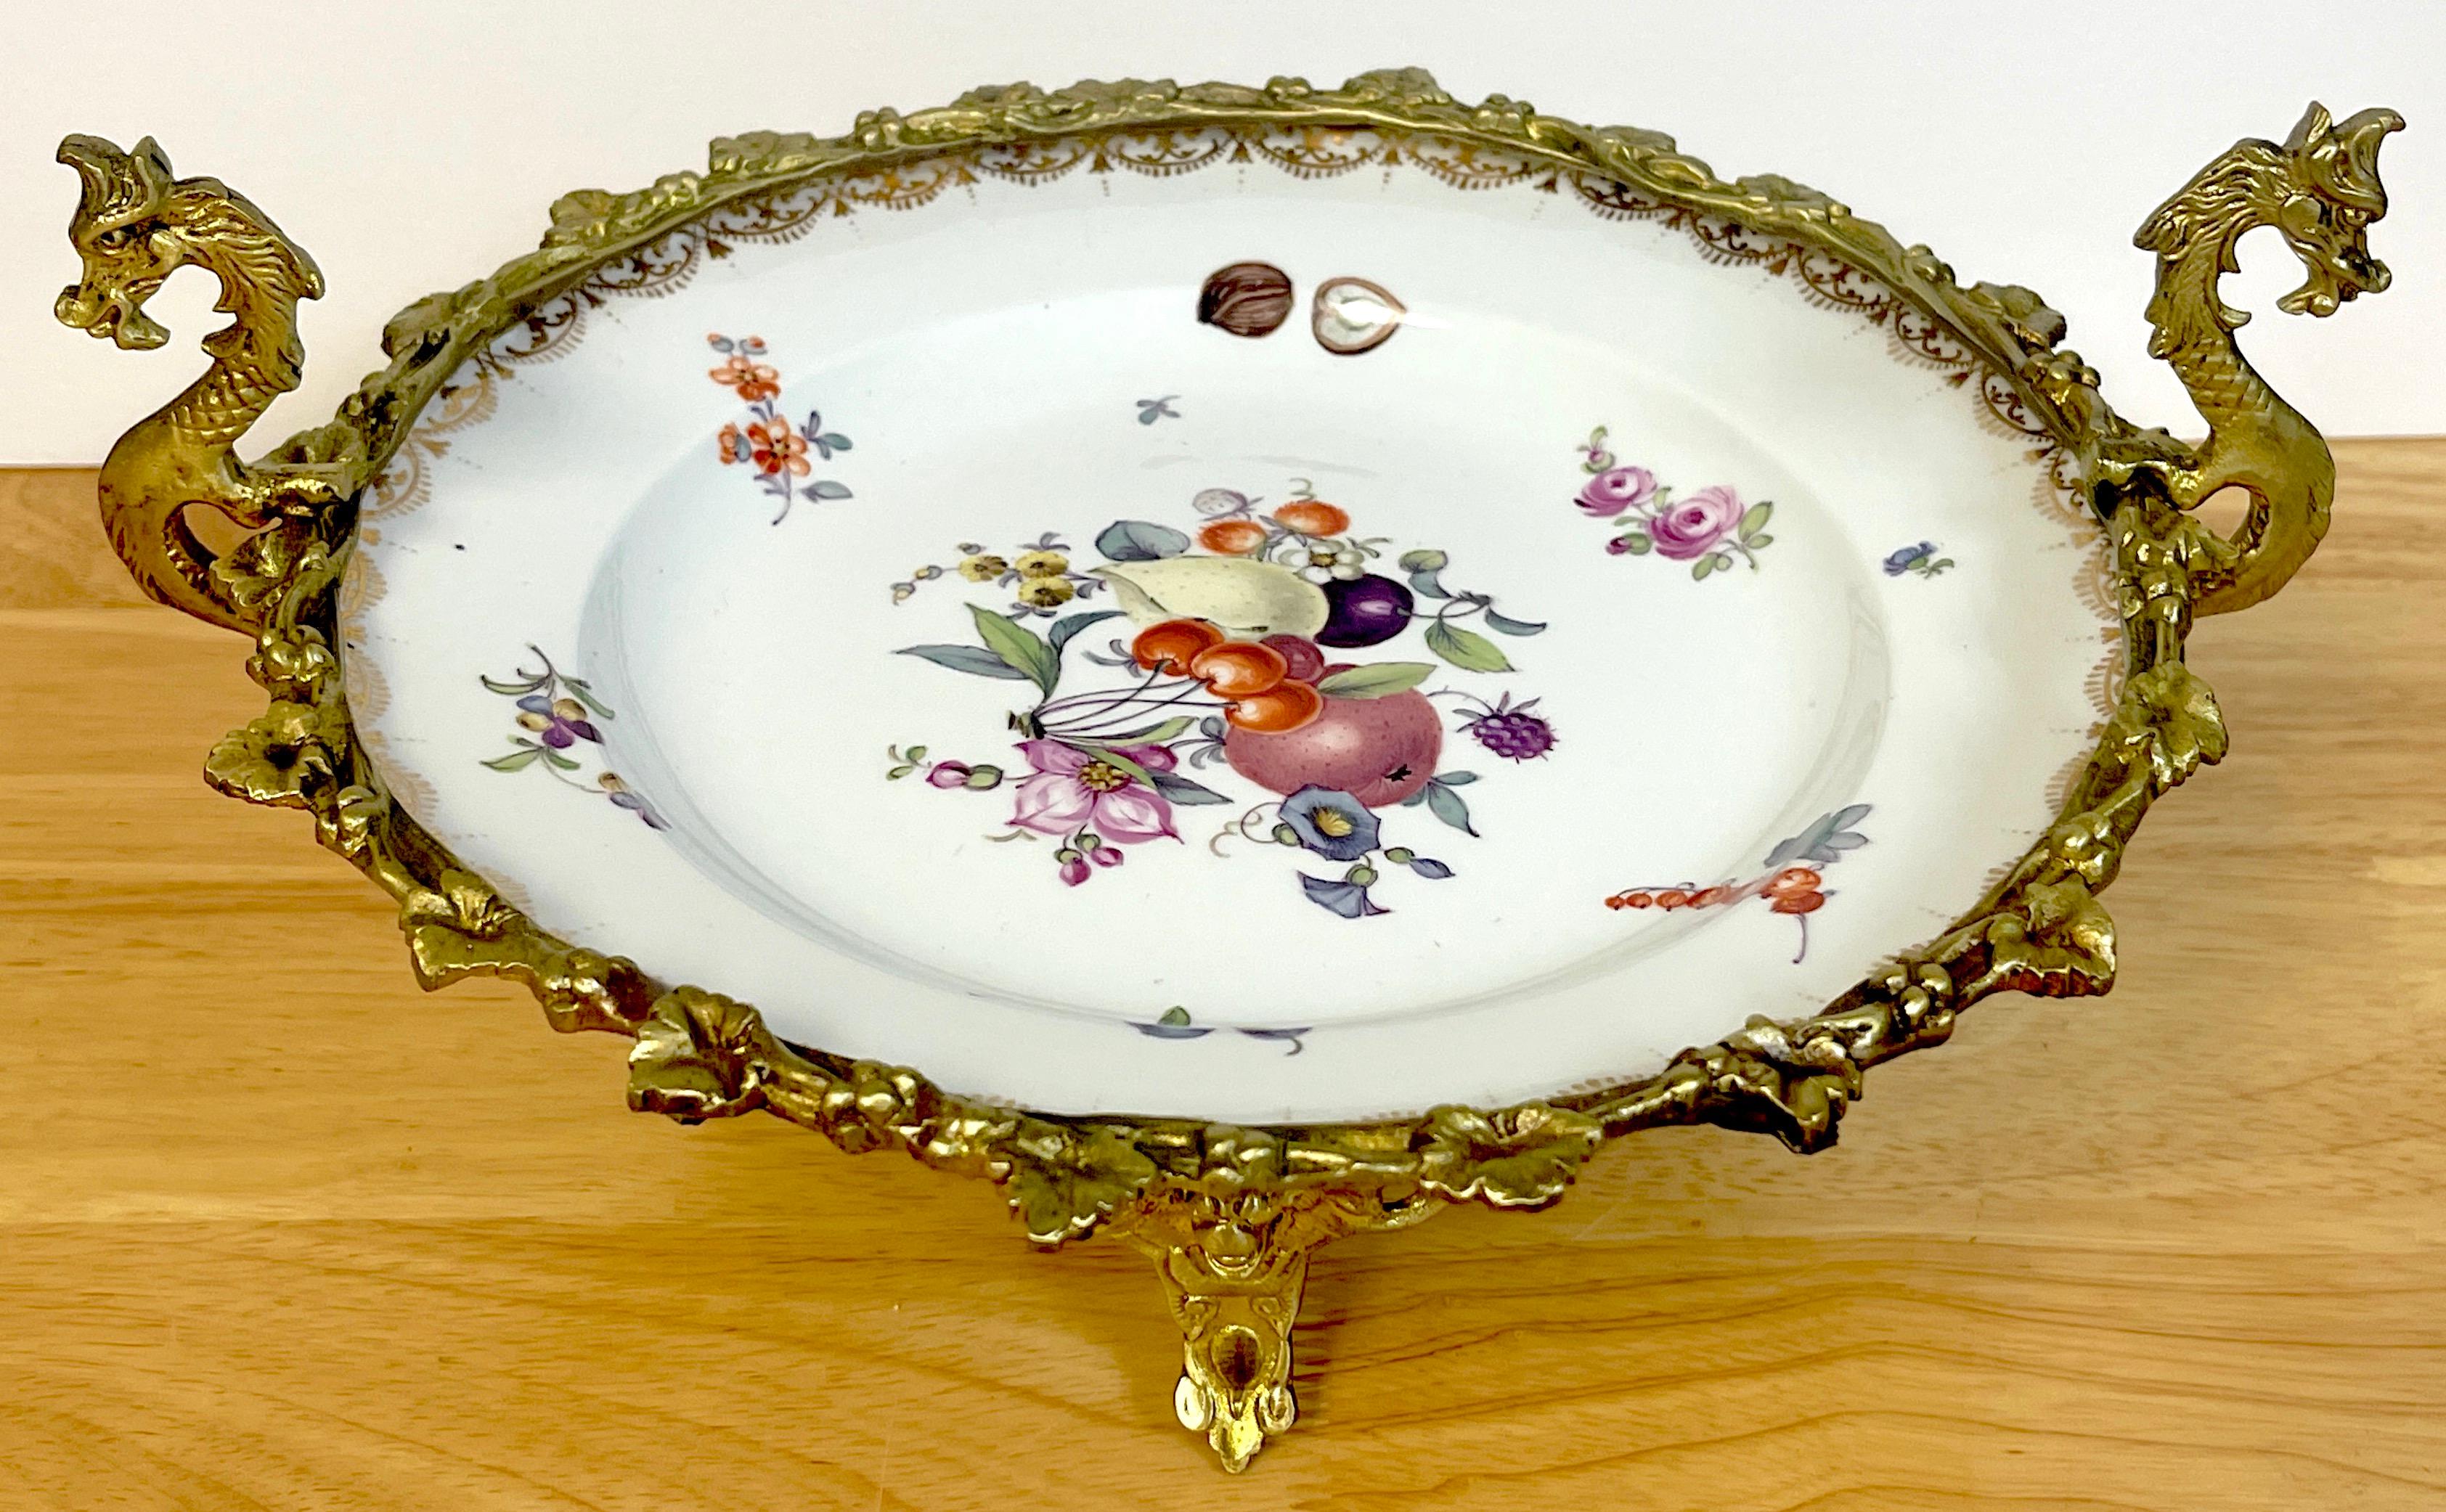 tazza du 19e siècle en porcelaine de Meissen à motif de fruits et de fleurs monté sur ormolu. La porcelaine de Meissen (probablement de la fin du 18e siècle) est finement décorée de divers fruits, noix et fleurs. Il est présenté dans un cadre en